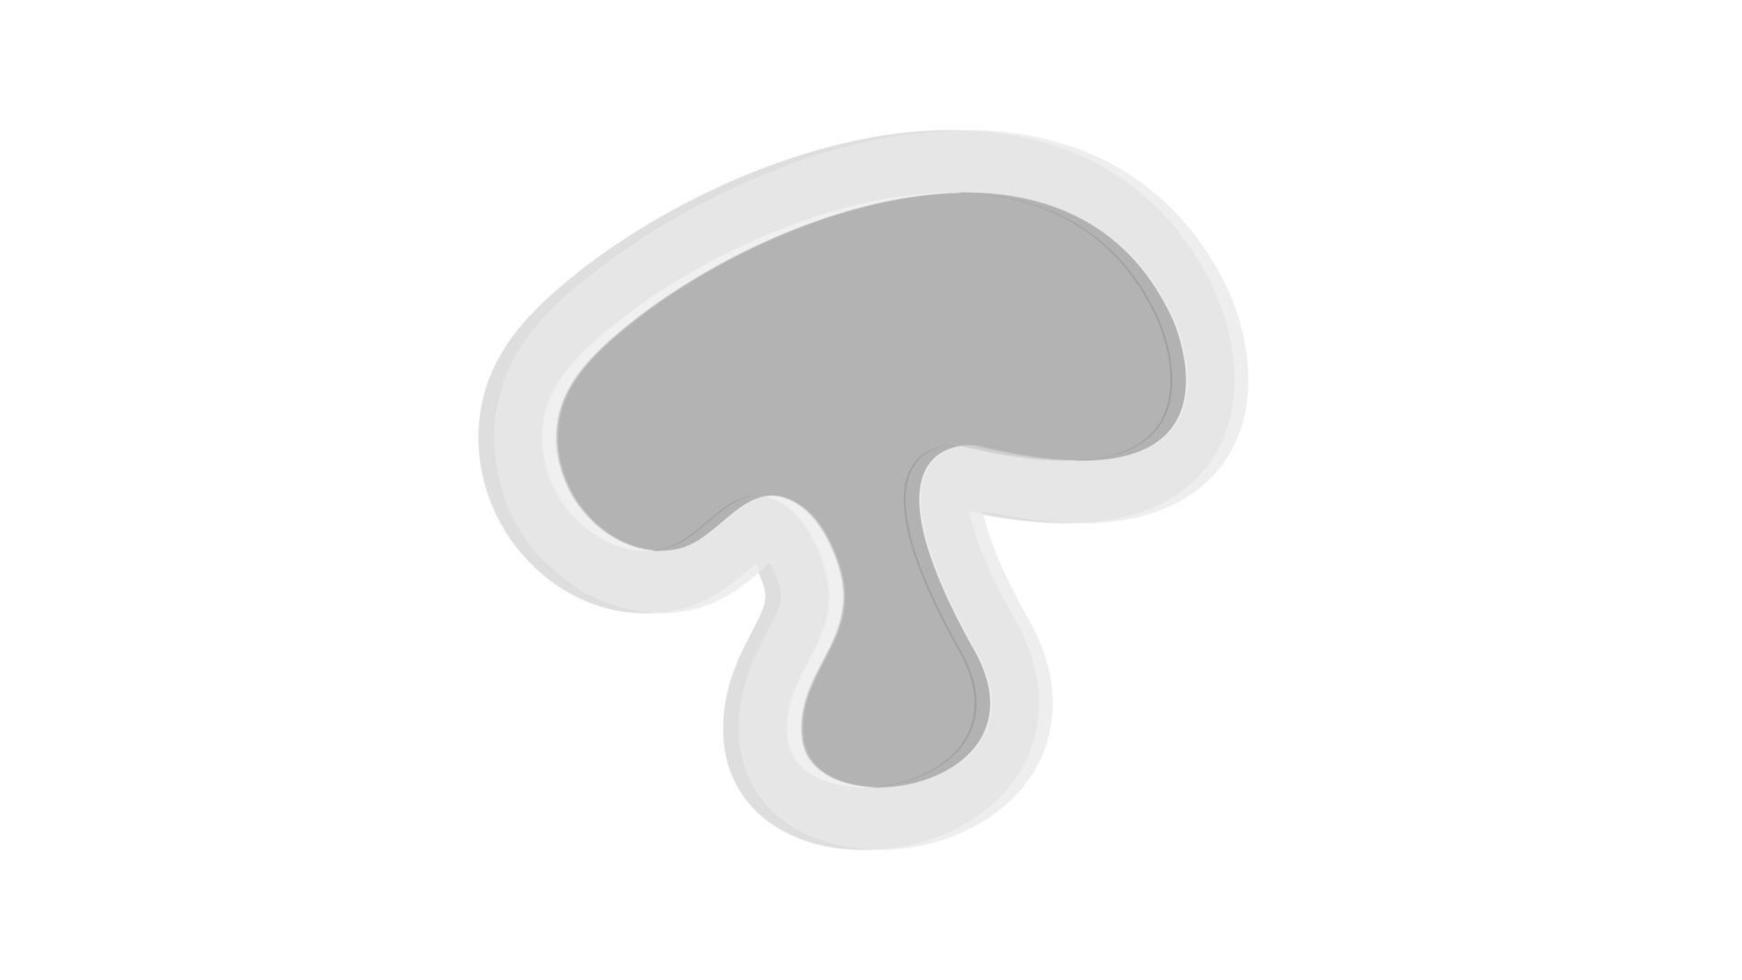 champignon avec l'icône de l'ombre. illustration plate de champignon avec icône de vecteur d'ombre pour la conception de sites Web